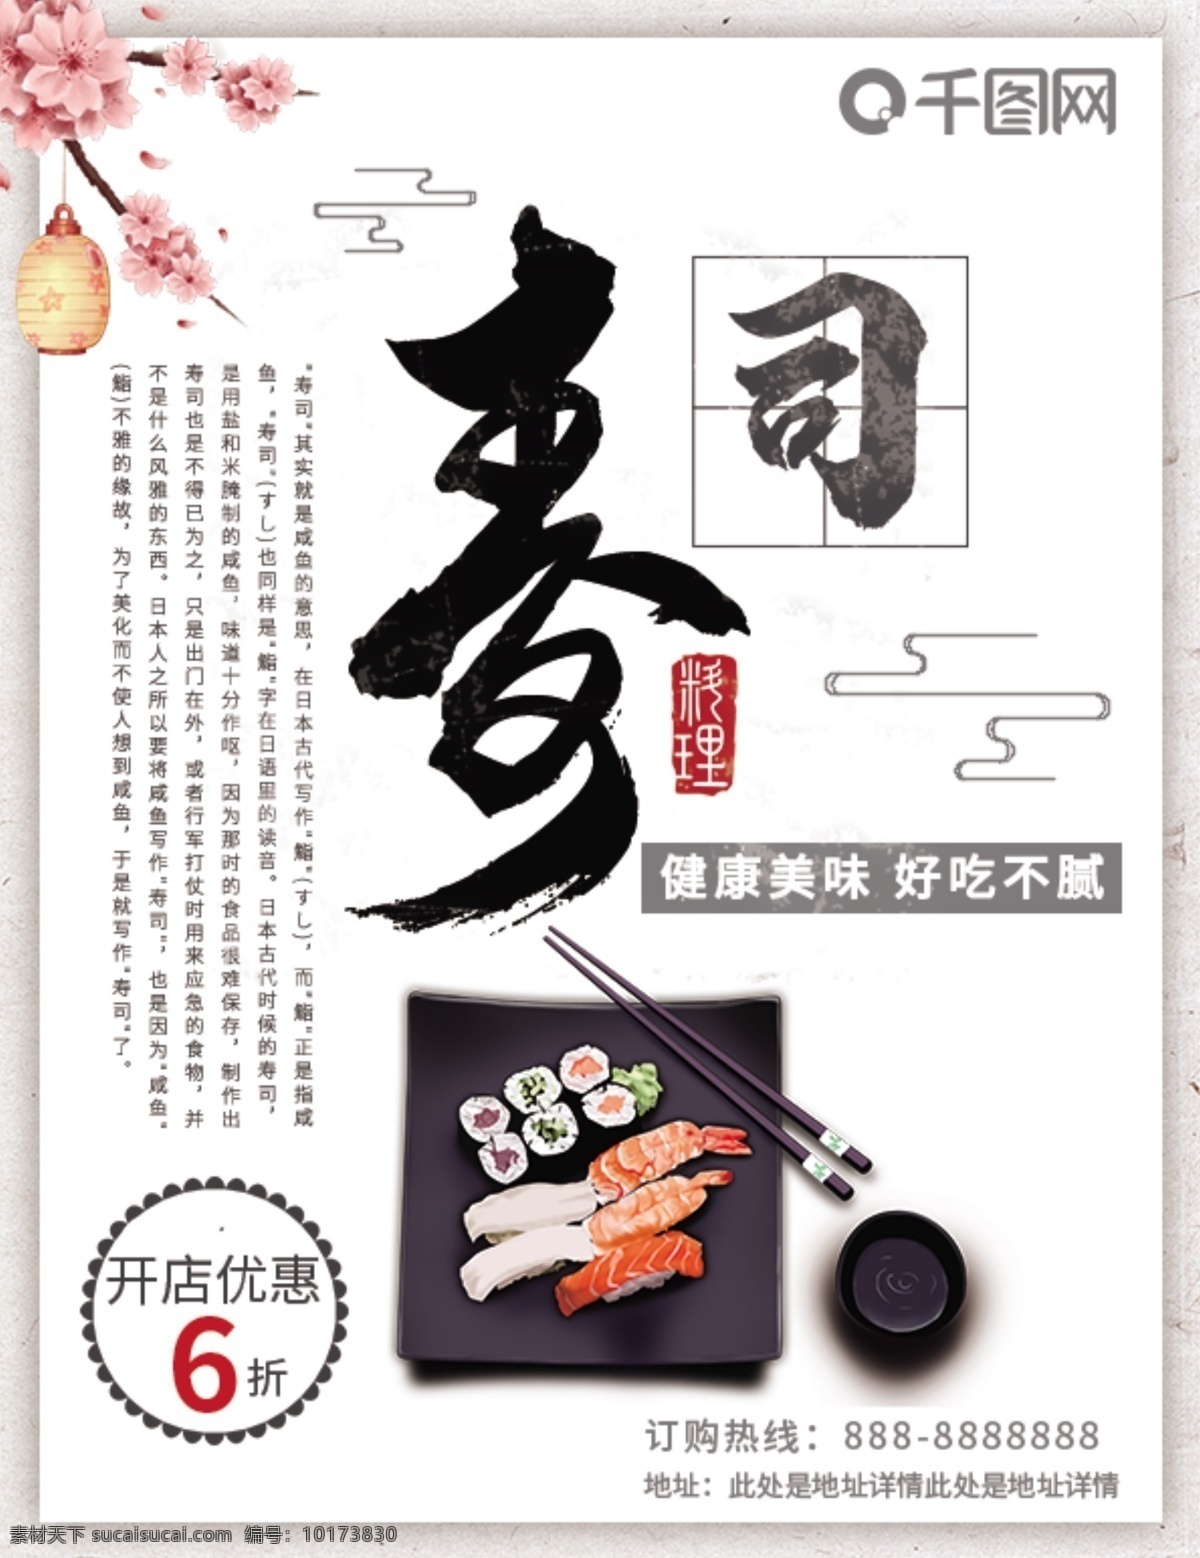 白色 简约 日式 美食 寿司 dm 宣传单 dm单 单页宣传单 寿司宣传单 美食宣传单 日式美食